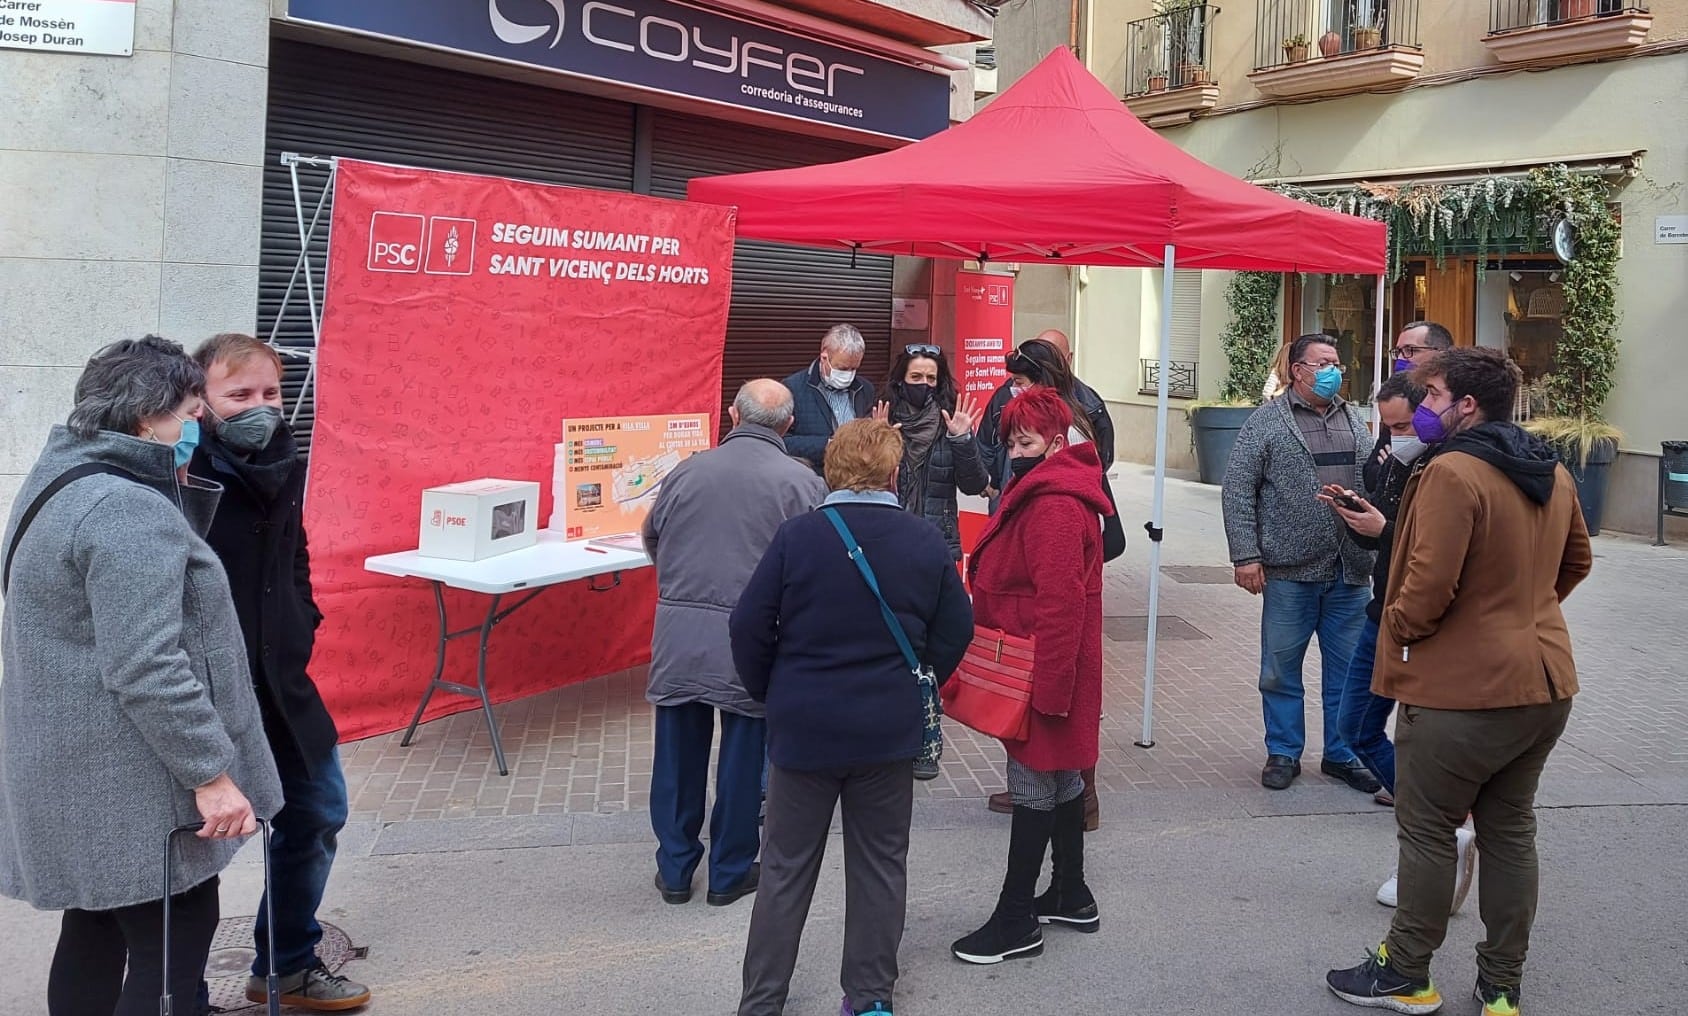 PSC y Sant Vicenç en Positiu visitan el barrio de Vila Vella